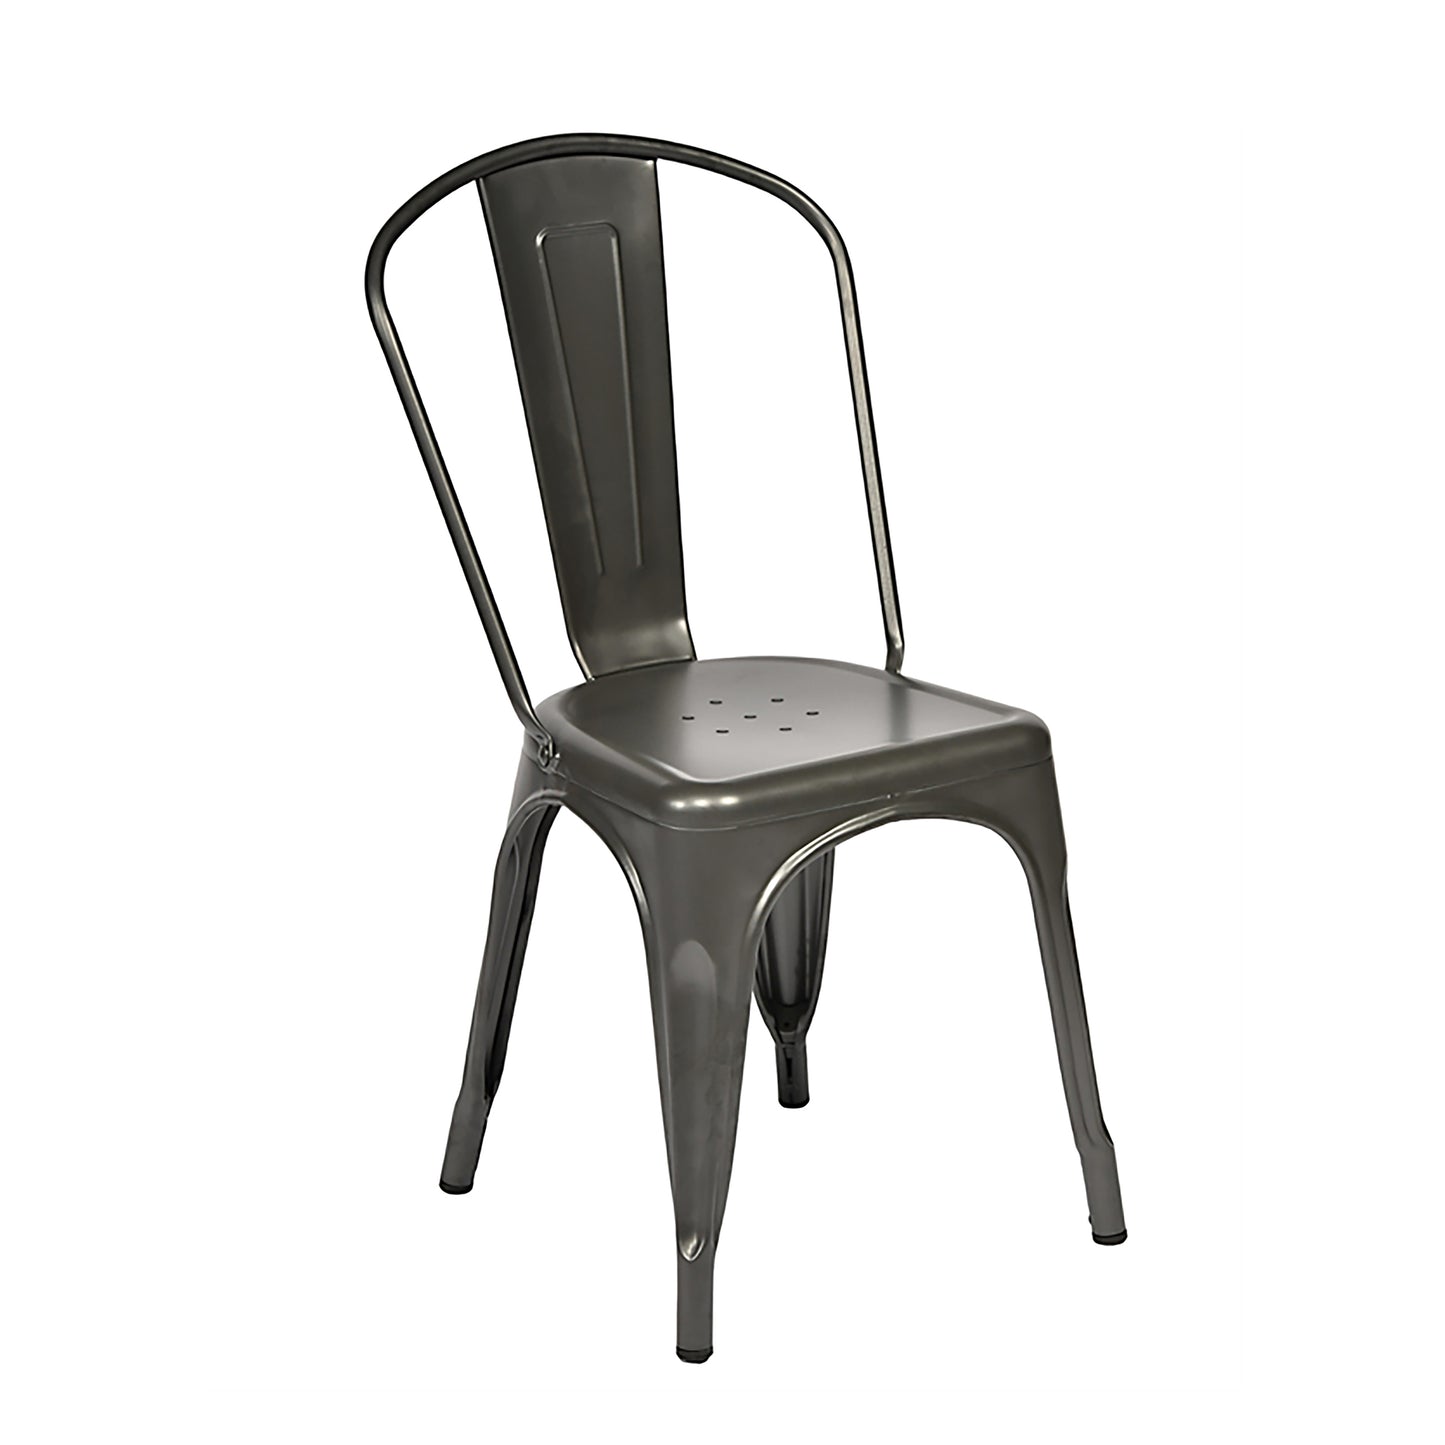 4. Bella Chair